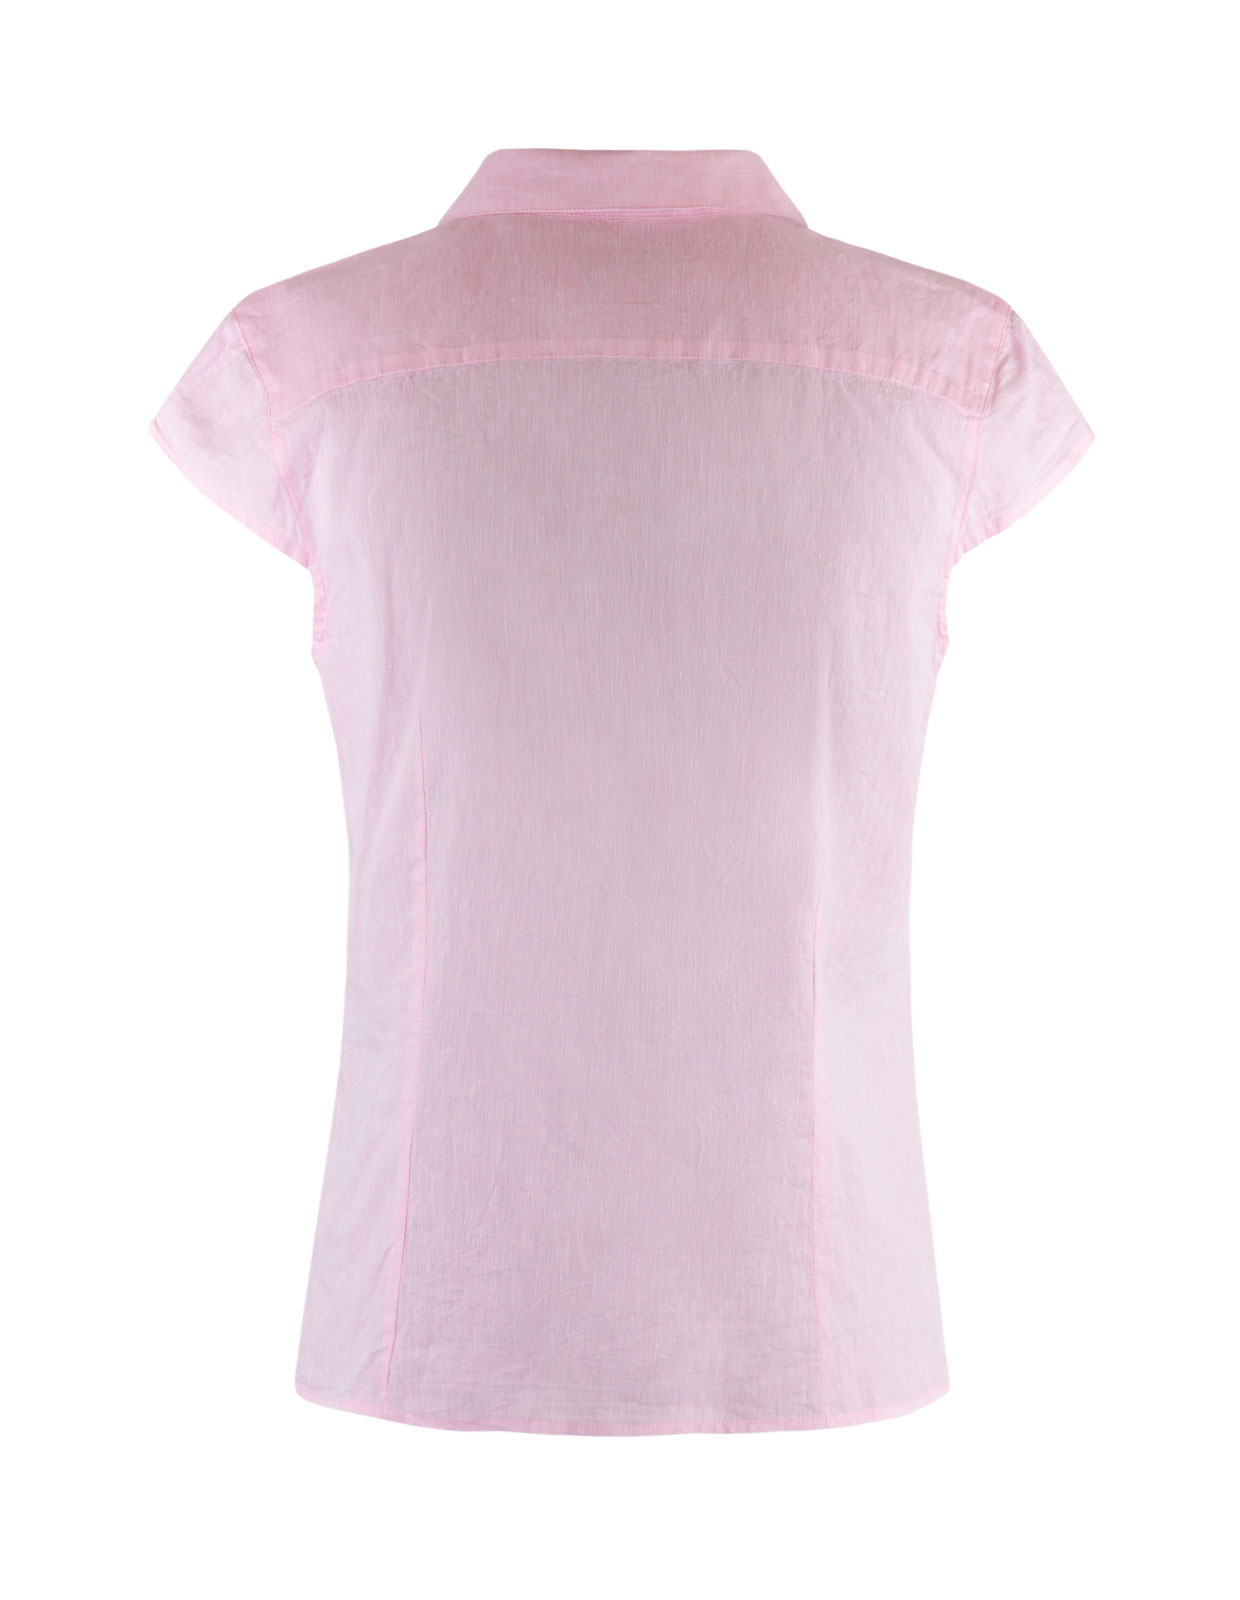 Linnen Shirt Cap Sleeve Lt Pink